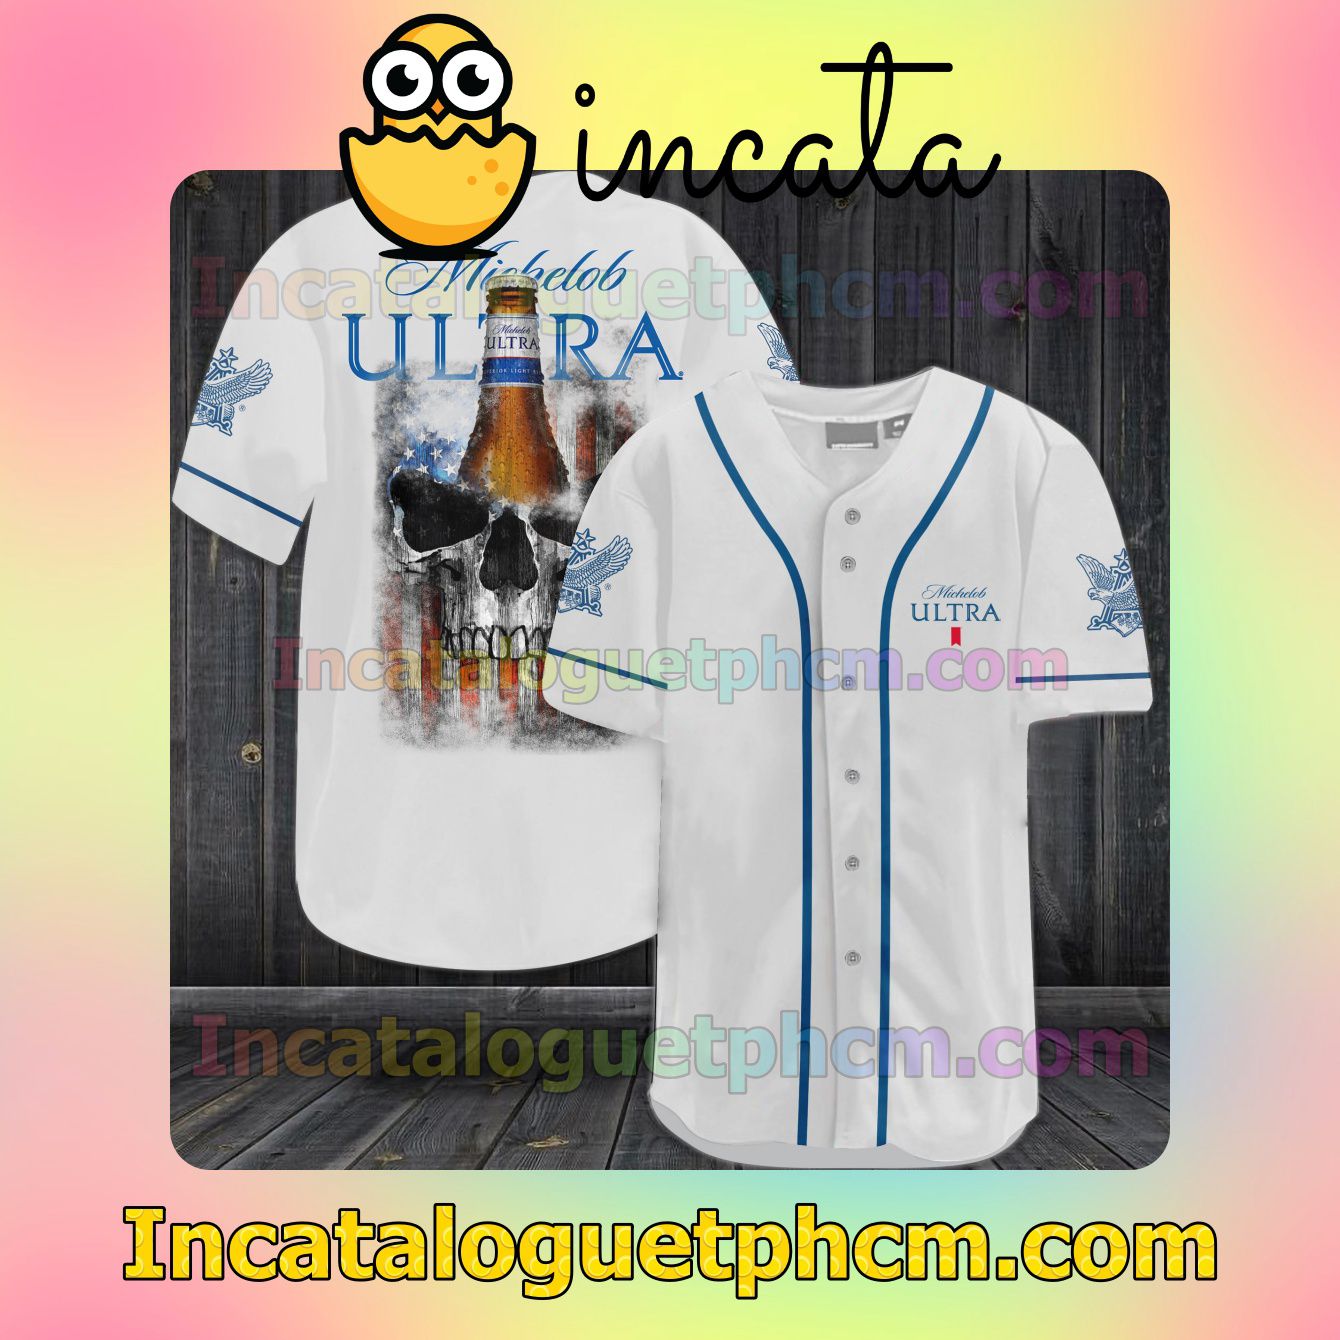 Us Store Michelob Ultra Baseball Jersey Shirt